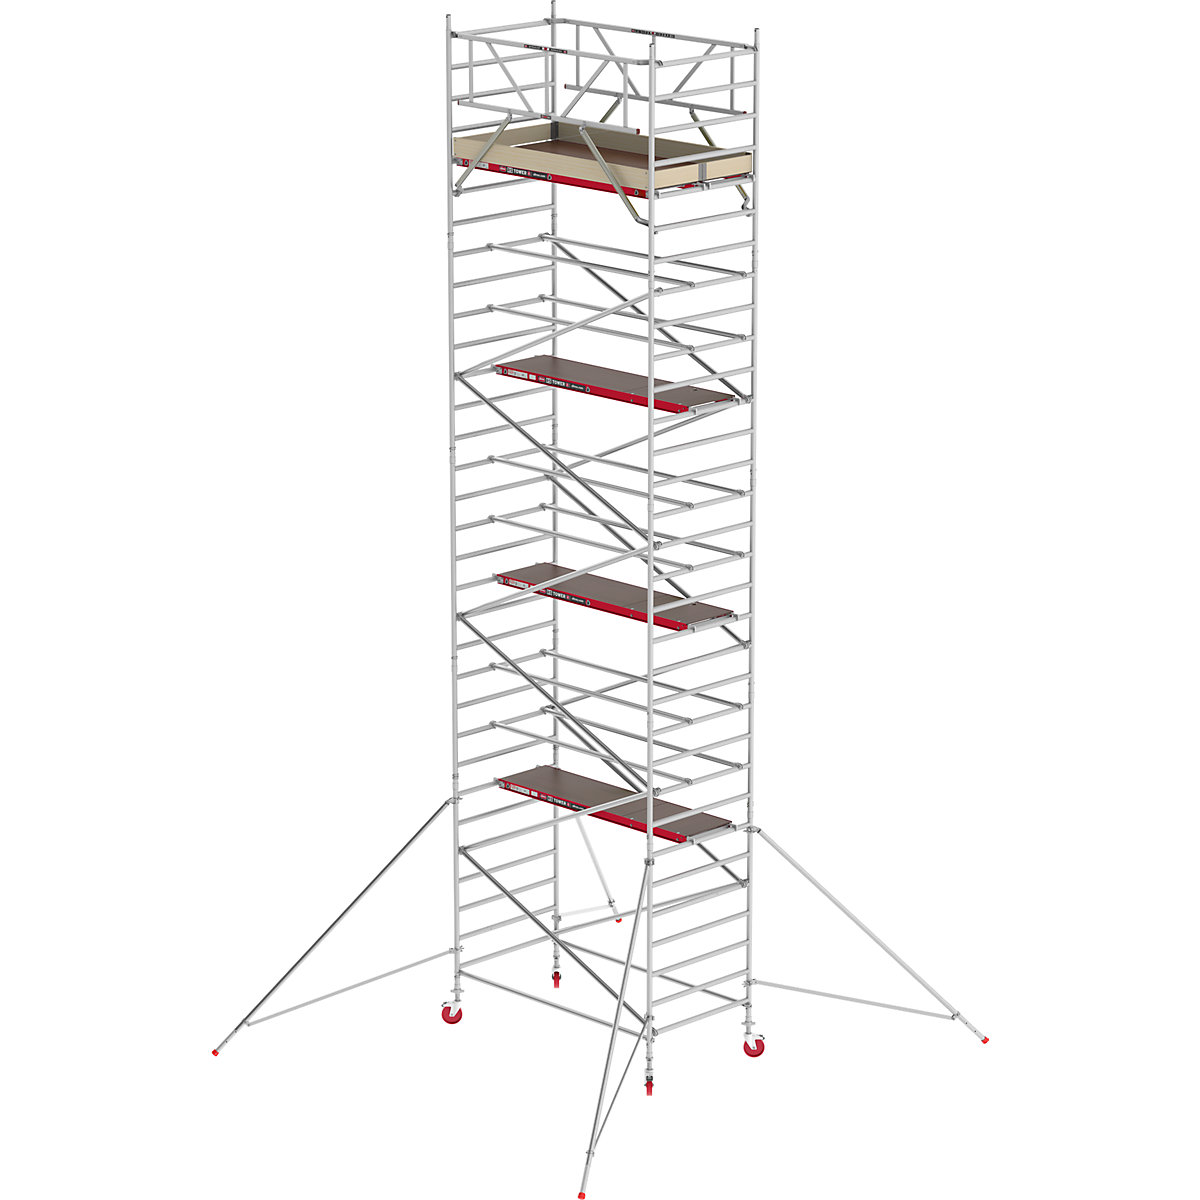 Pomičen oder RS TOWER 42, širok – Altrex, lesena ploščad, dolžina 2,45 m, delovna višina 10,20 m